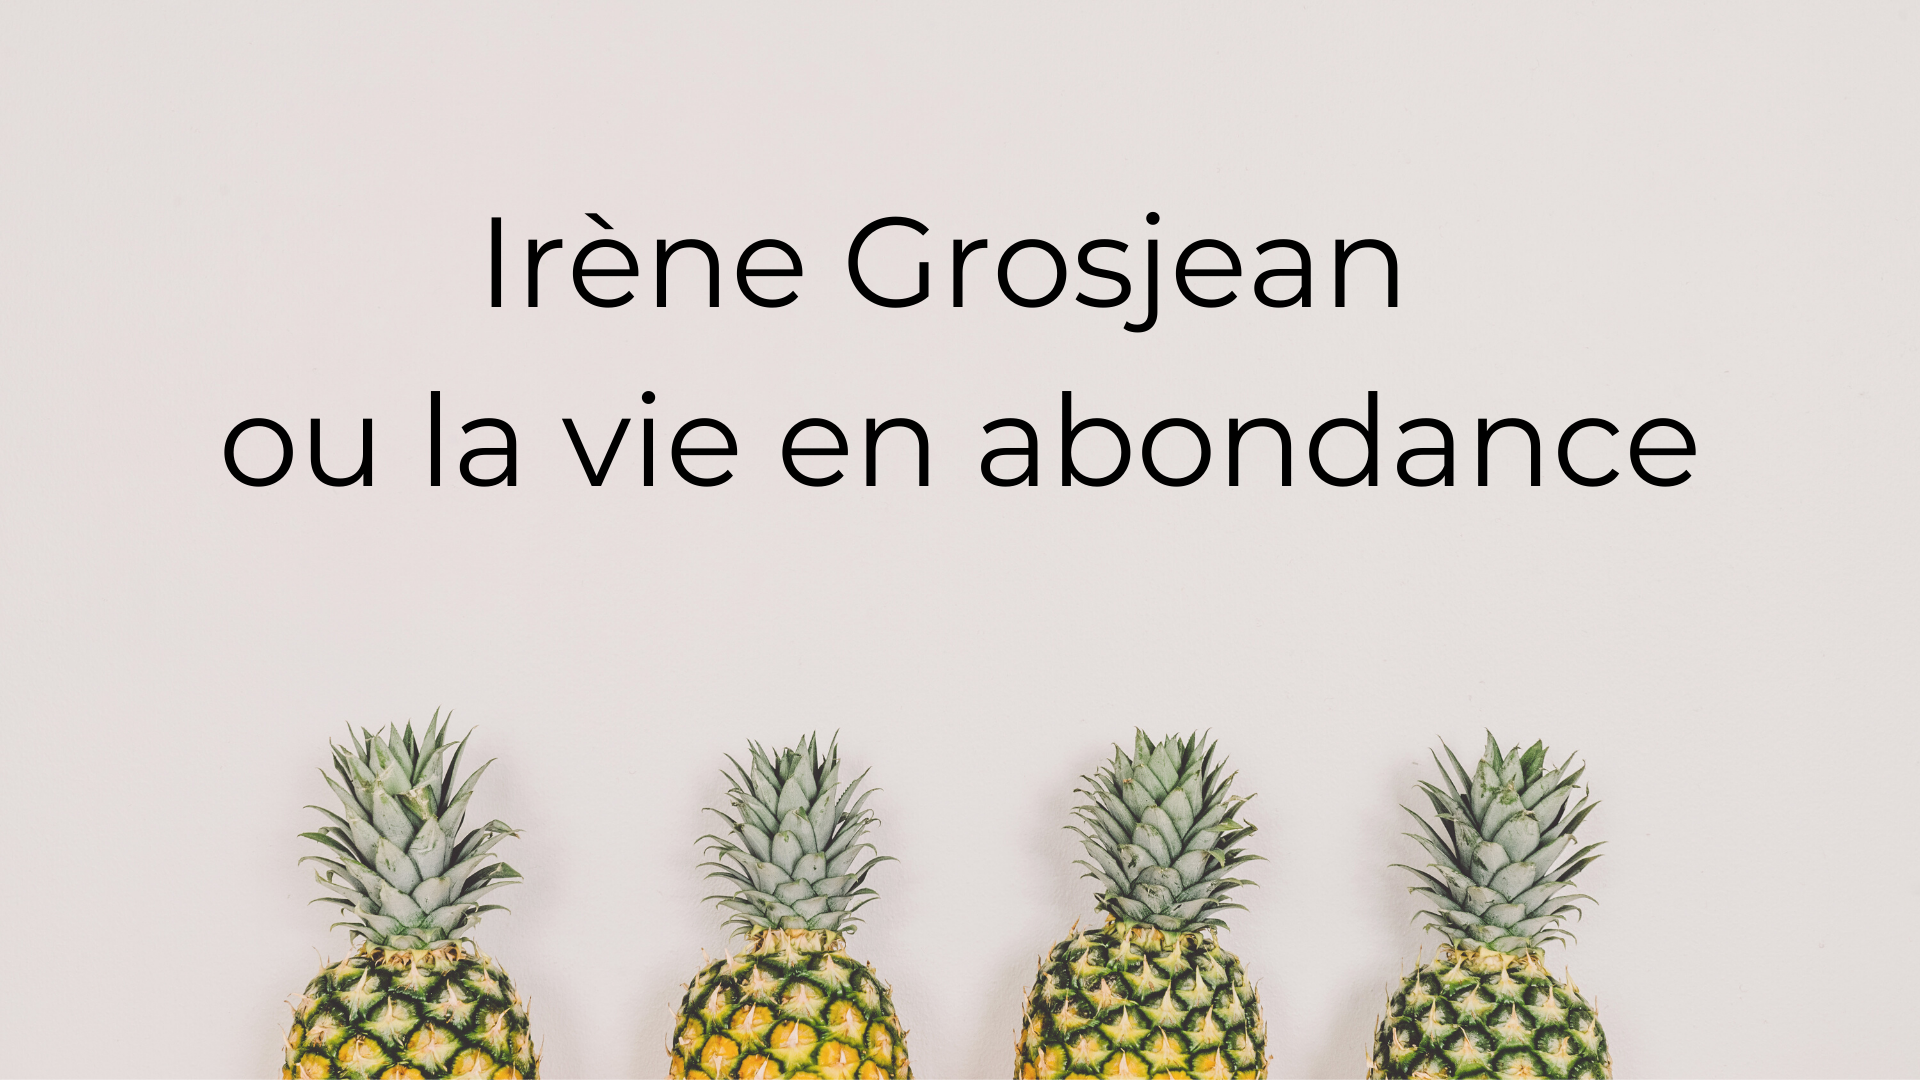 Video_Irene Grosjean